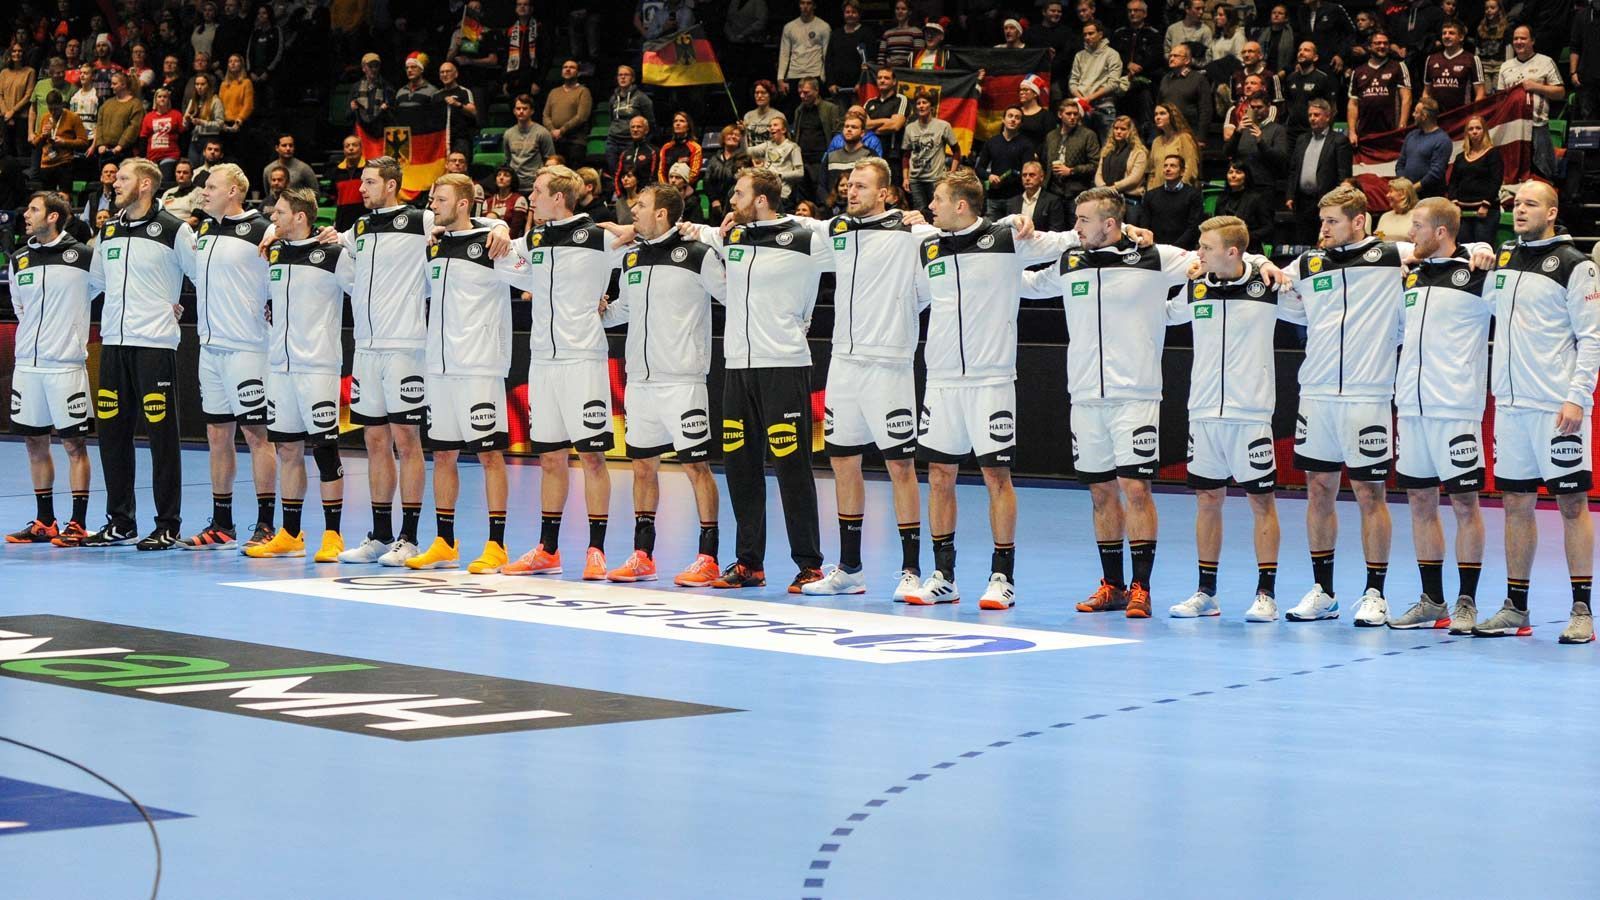 
                <strong>Handball-EM: Die Vorrunden-Noten der deutschen Stars</strong><br>
                Die deutsche Handball-Nationalmannschaft steht in der Hauptrunde der Europameisterschaft. Überzeugend waren die bisherigen drei Auftritte gegen die Niederlande, Spanien und Lettland noch nicht. ran.de macht den Vorrunden-Check der deutschen Stars.
              